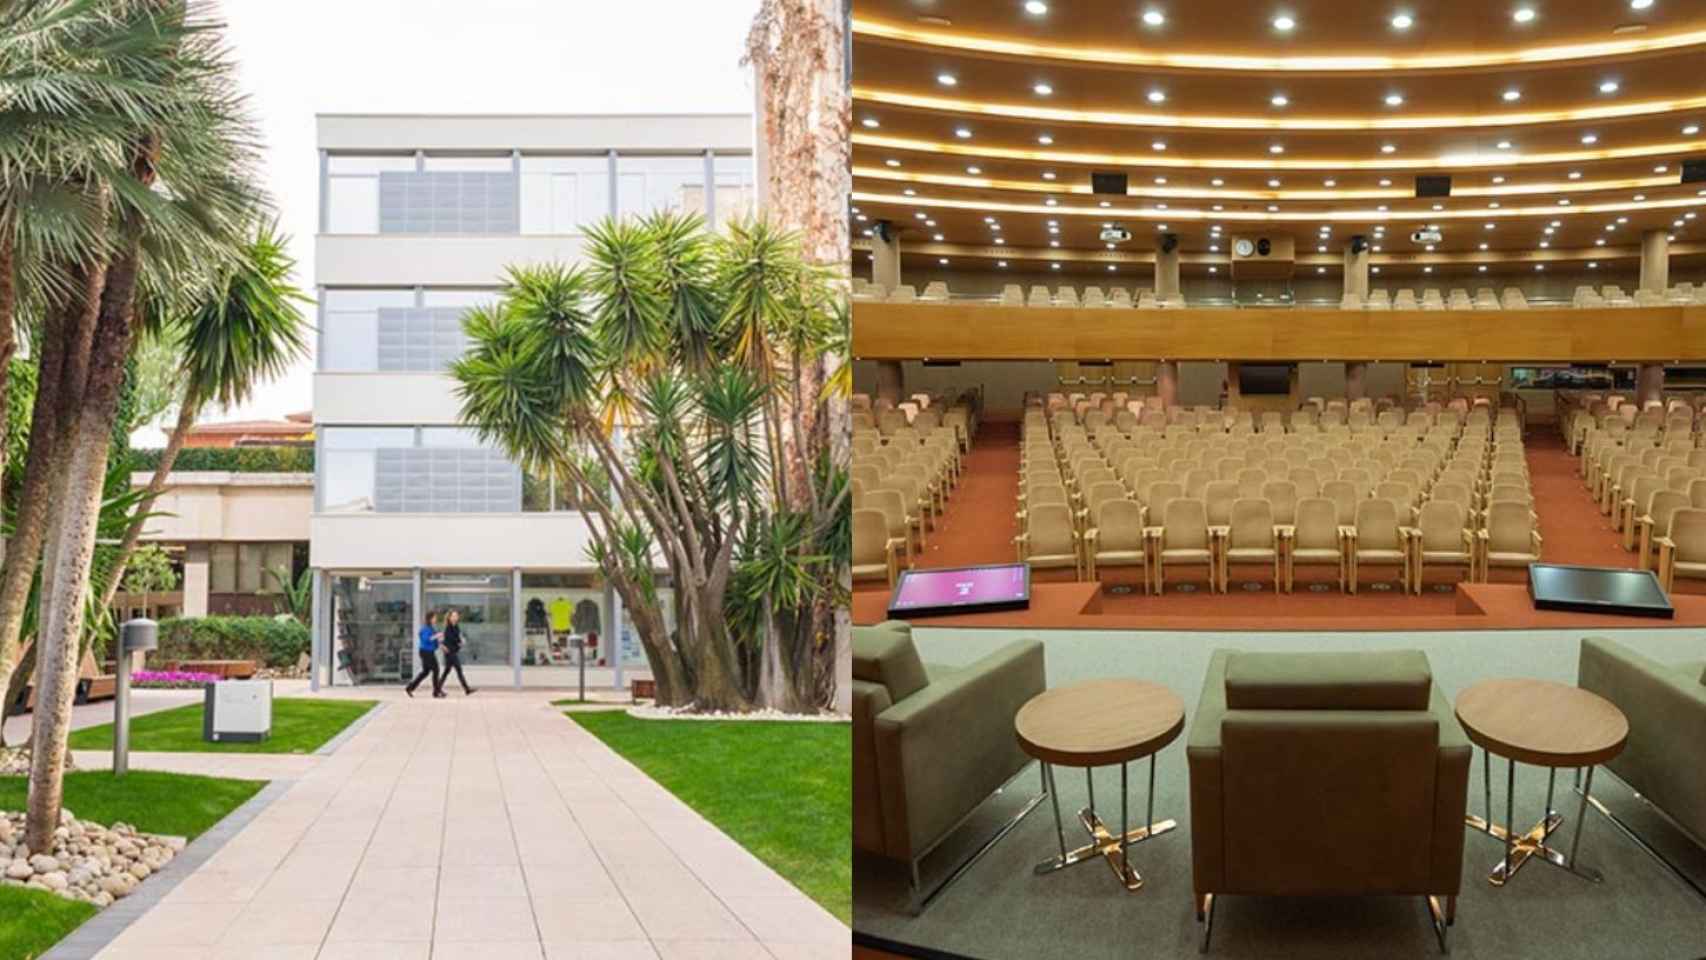 Campus de IESE en Barcelona, cuyo MBA es el tercero mejor de Europa según el Financial Times / IESE